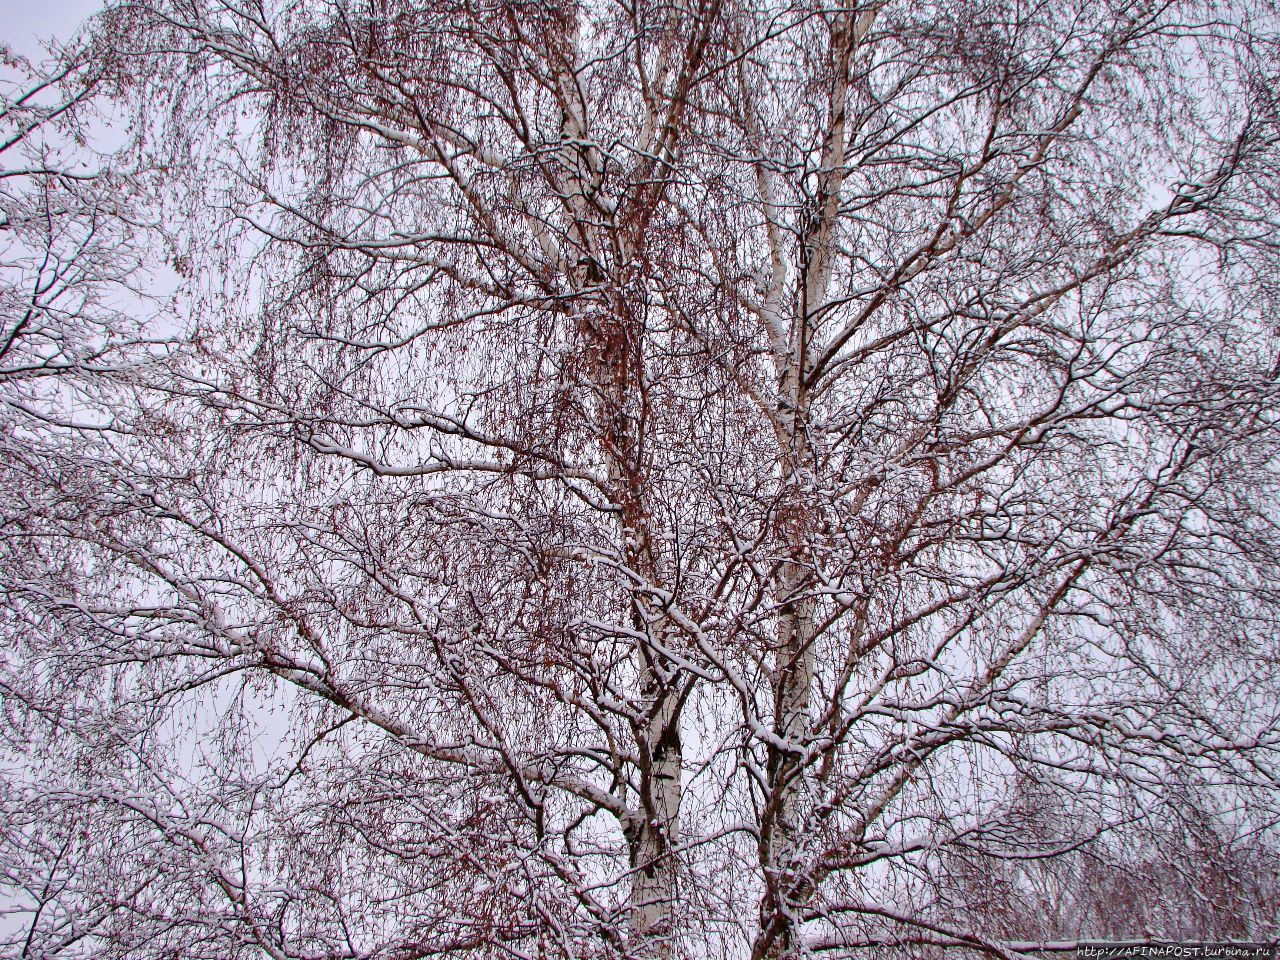 Зима. Прилетели свиристели — посвистели, улетели Москва и Московская область, Россия